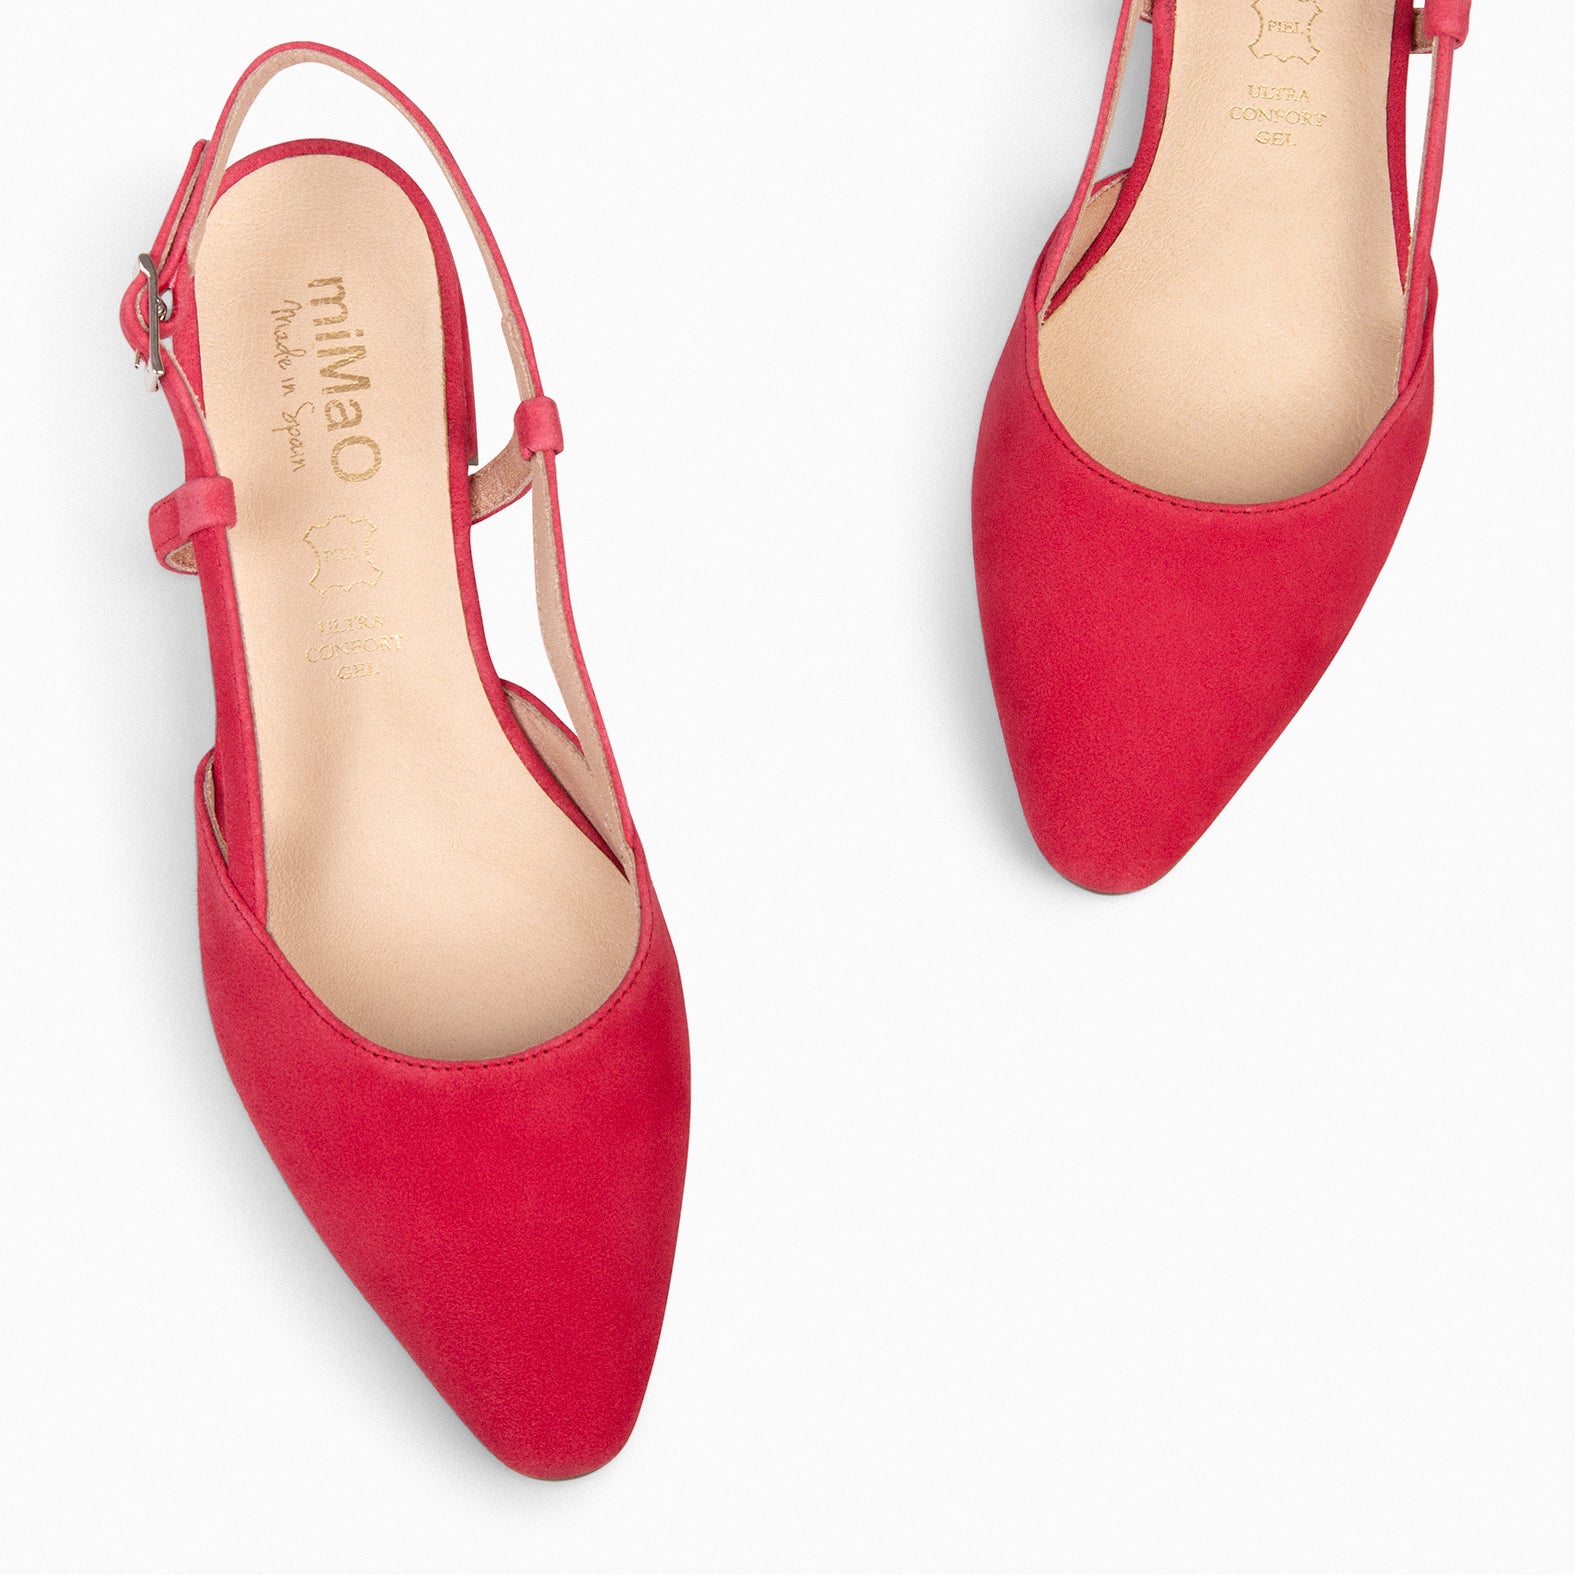 BRUNCH - RED slingback flat shoe